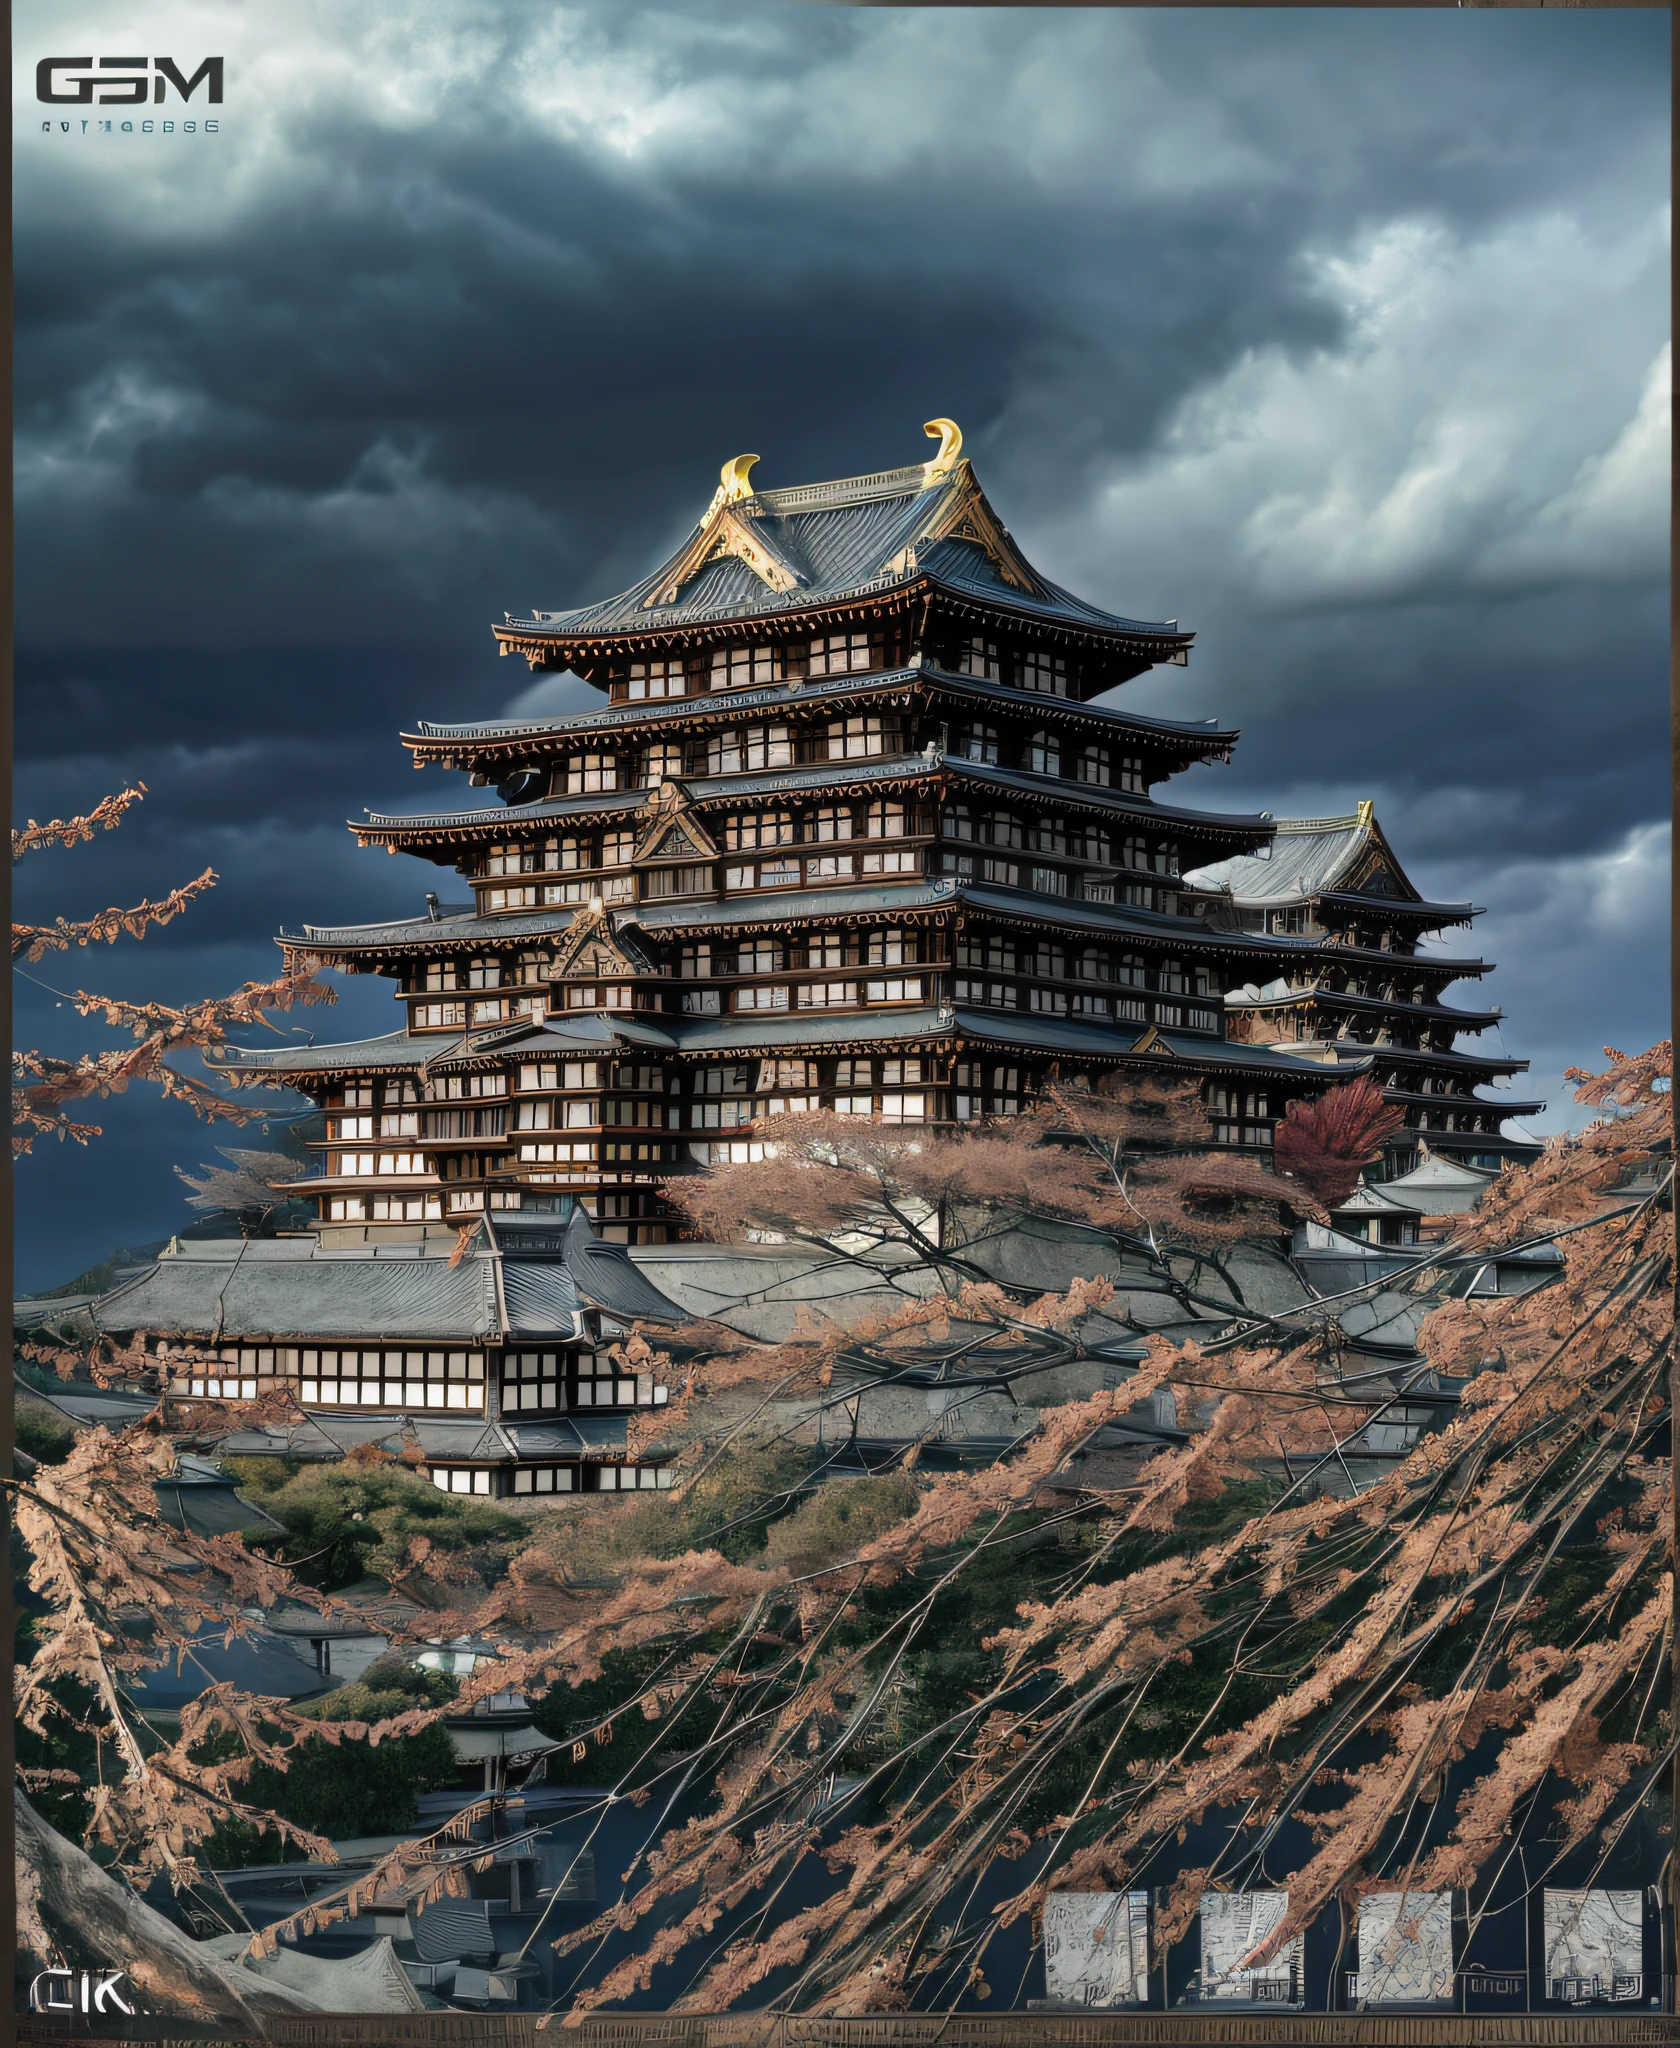 杰作、顶级品质、高品质、极其细致的 CG Unity 8K 壁纸、战国时期　非常详细、名古屋城、姬路城、熊本城、白鹭城、或者城堡、日本城堡、屋外、天空天空、云、晚上、不是人类、日本, 月光, 电影图像, 景观, 水, 那个树, 阴暗的天空, 下降, 悬崖, 自然的, 湖, 一条河, 多云灰烬天空, 获奖照片, 散景自由度, 景深, nffsw, 盛开, 色差, 相片写实, 非常详细, artstation 上的热门, cgsociety 趋势、复杂且、详细、戏剧性的、